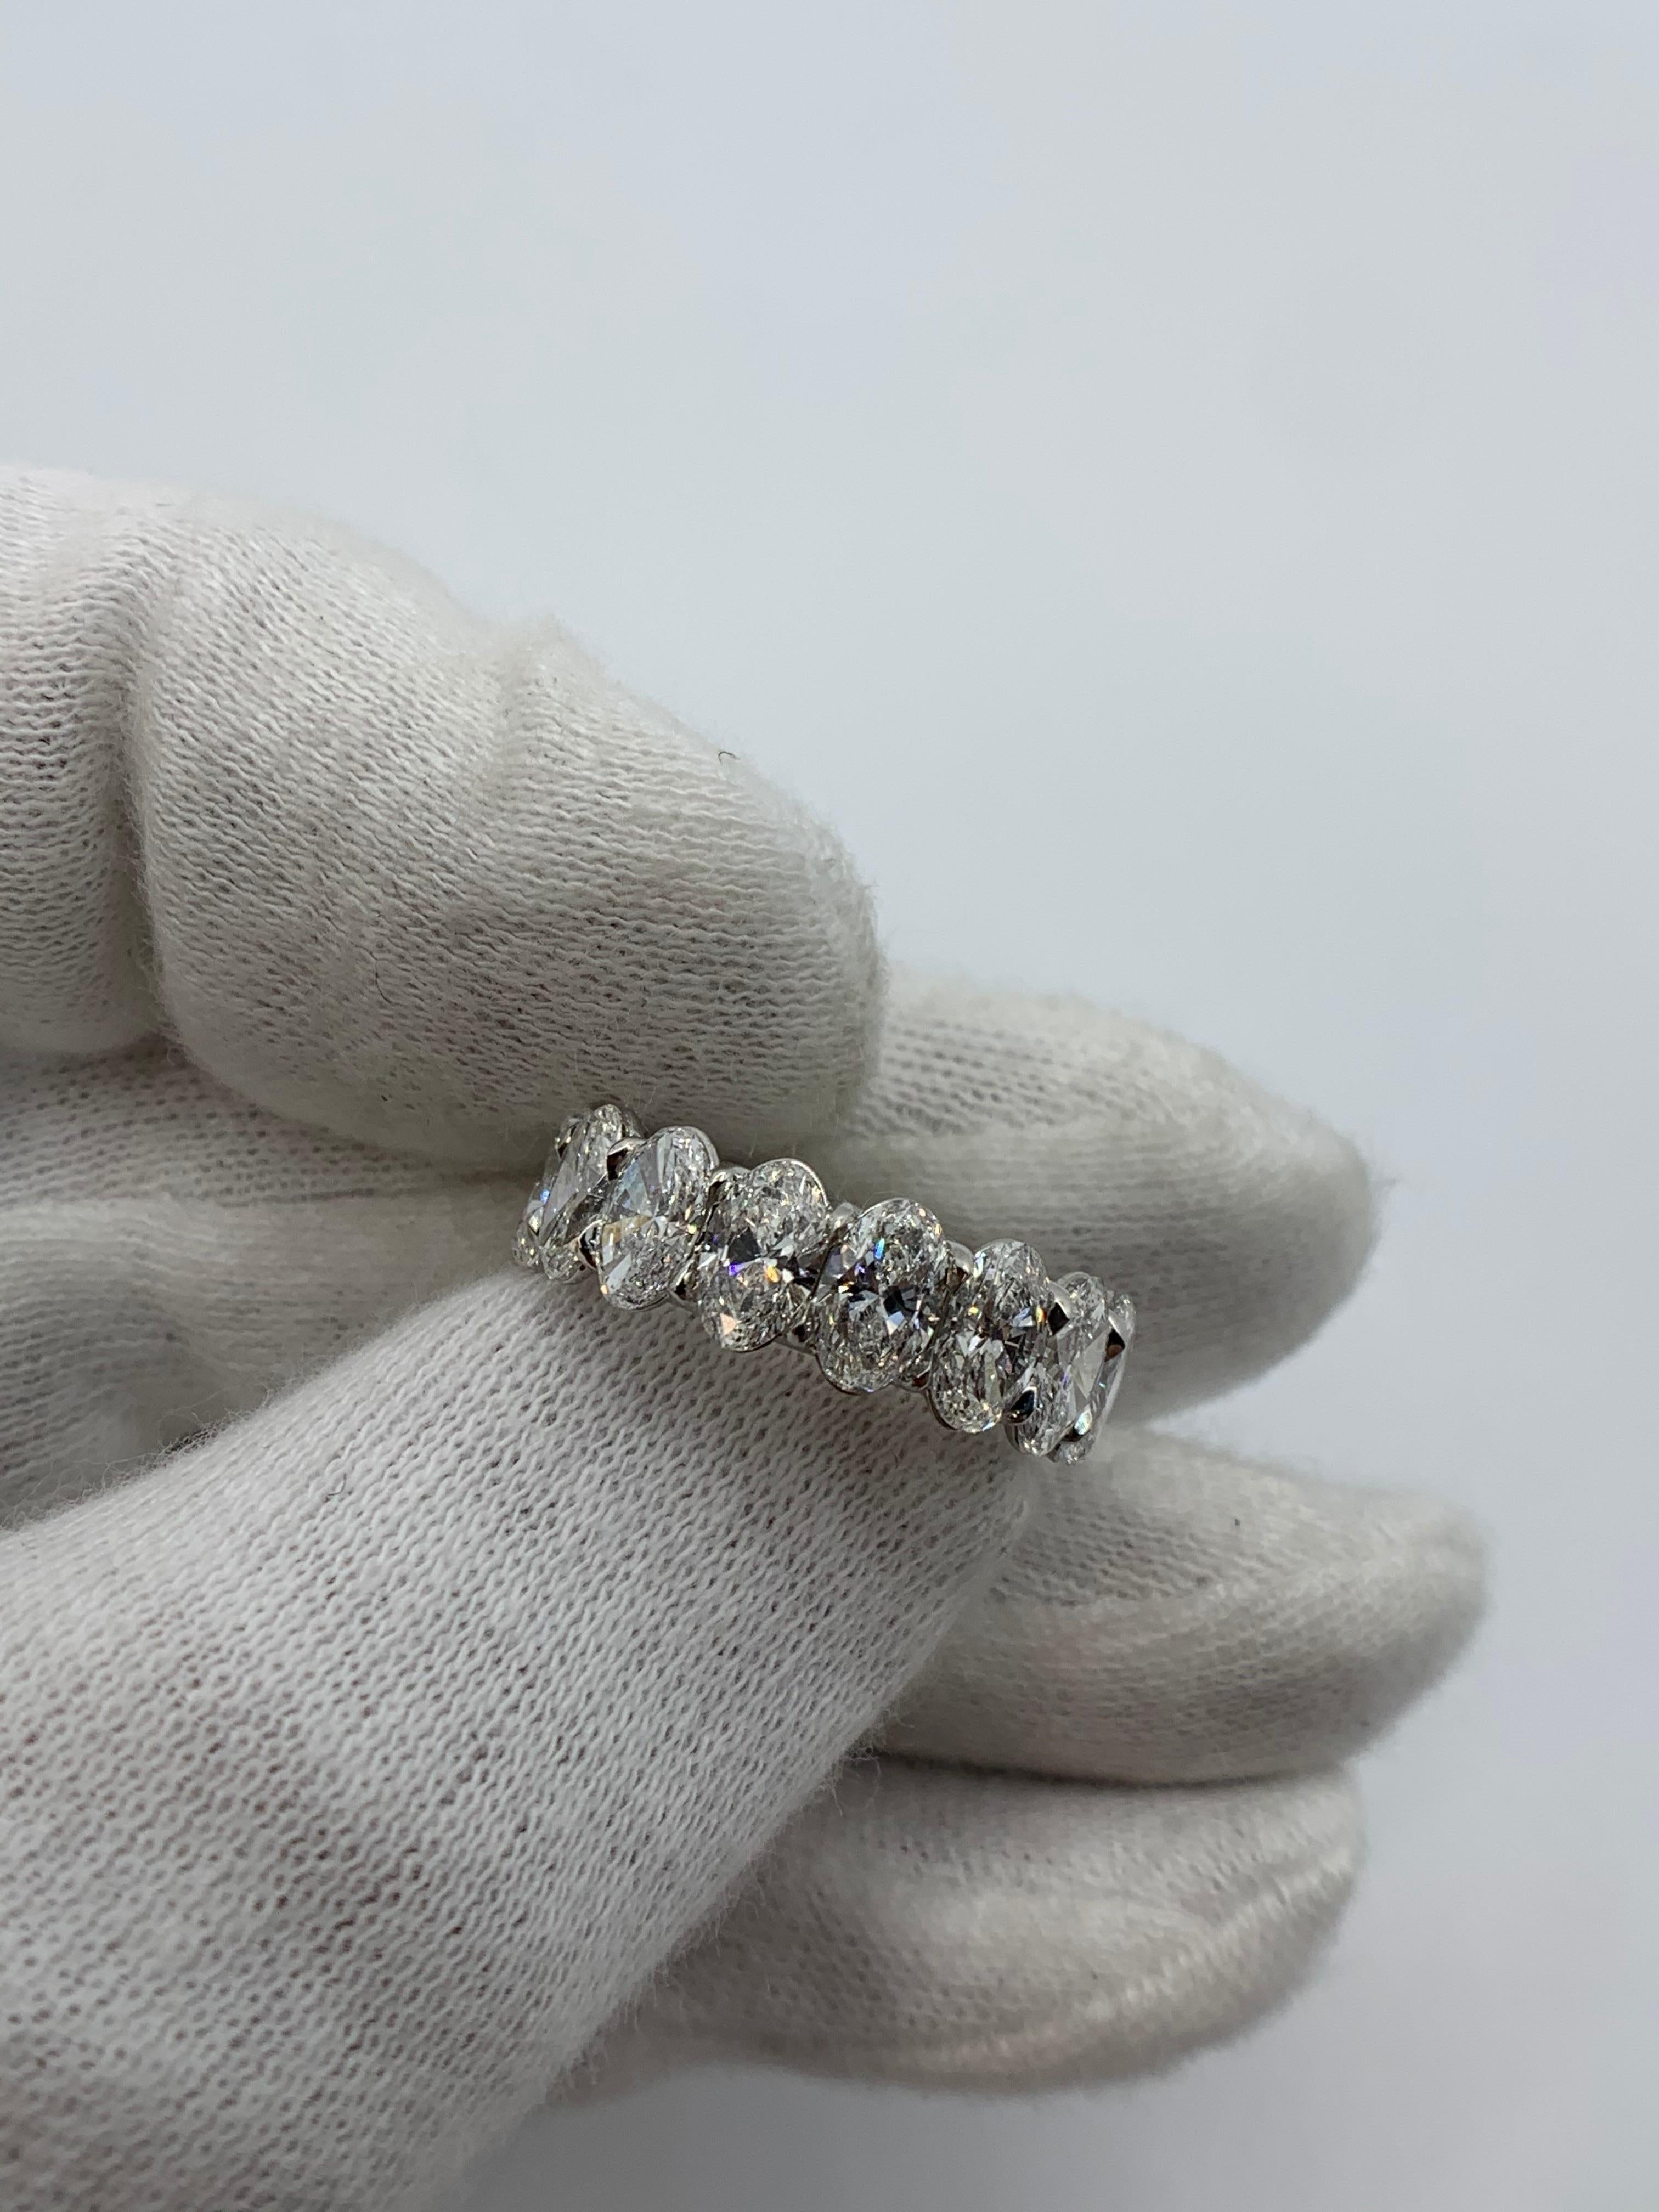 16 perfekt aufeinander abgestimmte und langgestreckte Diamanten im Ovalschliff mit einem Gesamtgewicht von 6,48 Karat.
Jeder Stein wiegt über 40 Punkte pro Stück.
Steine sind DEF Farbe und SI Klarheit.
Jeder Stein ist vom GIA zertifiziert.
In Platin